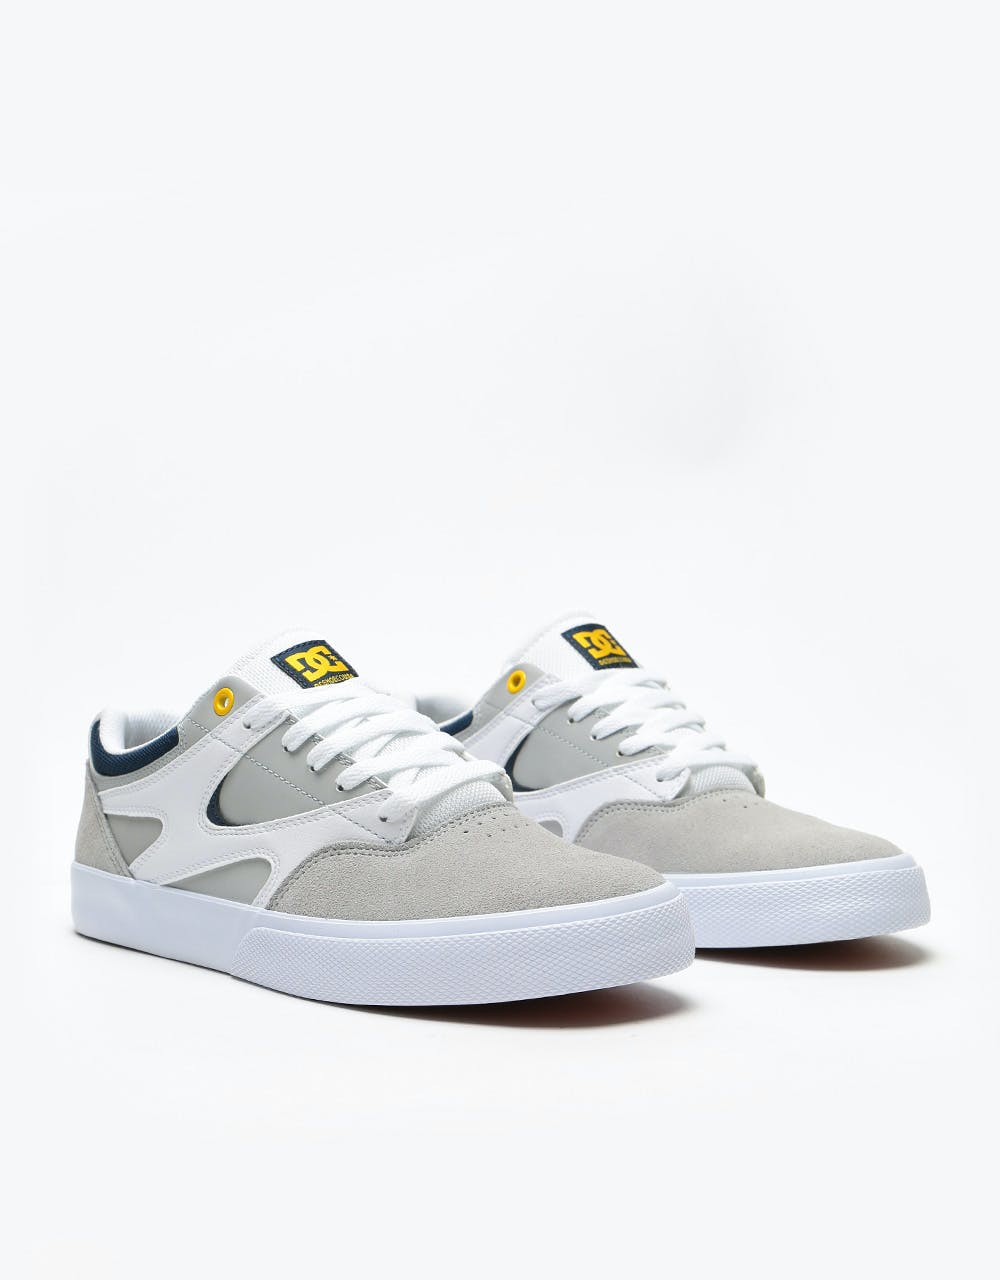 DC Kalis Vulc Skate Shoes - White/Grey/Grey